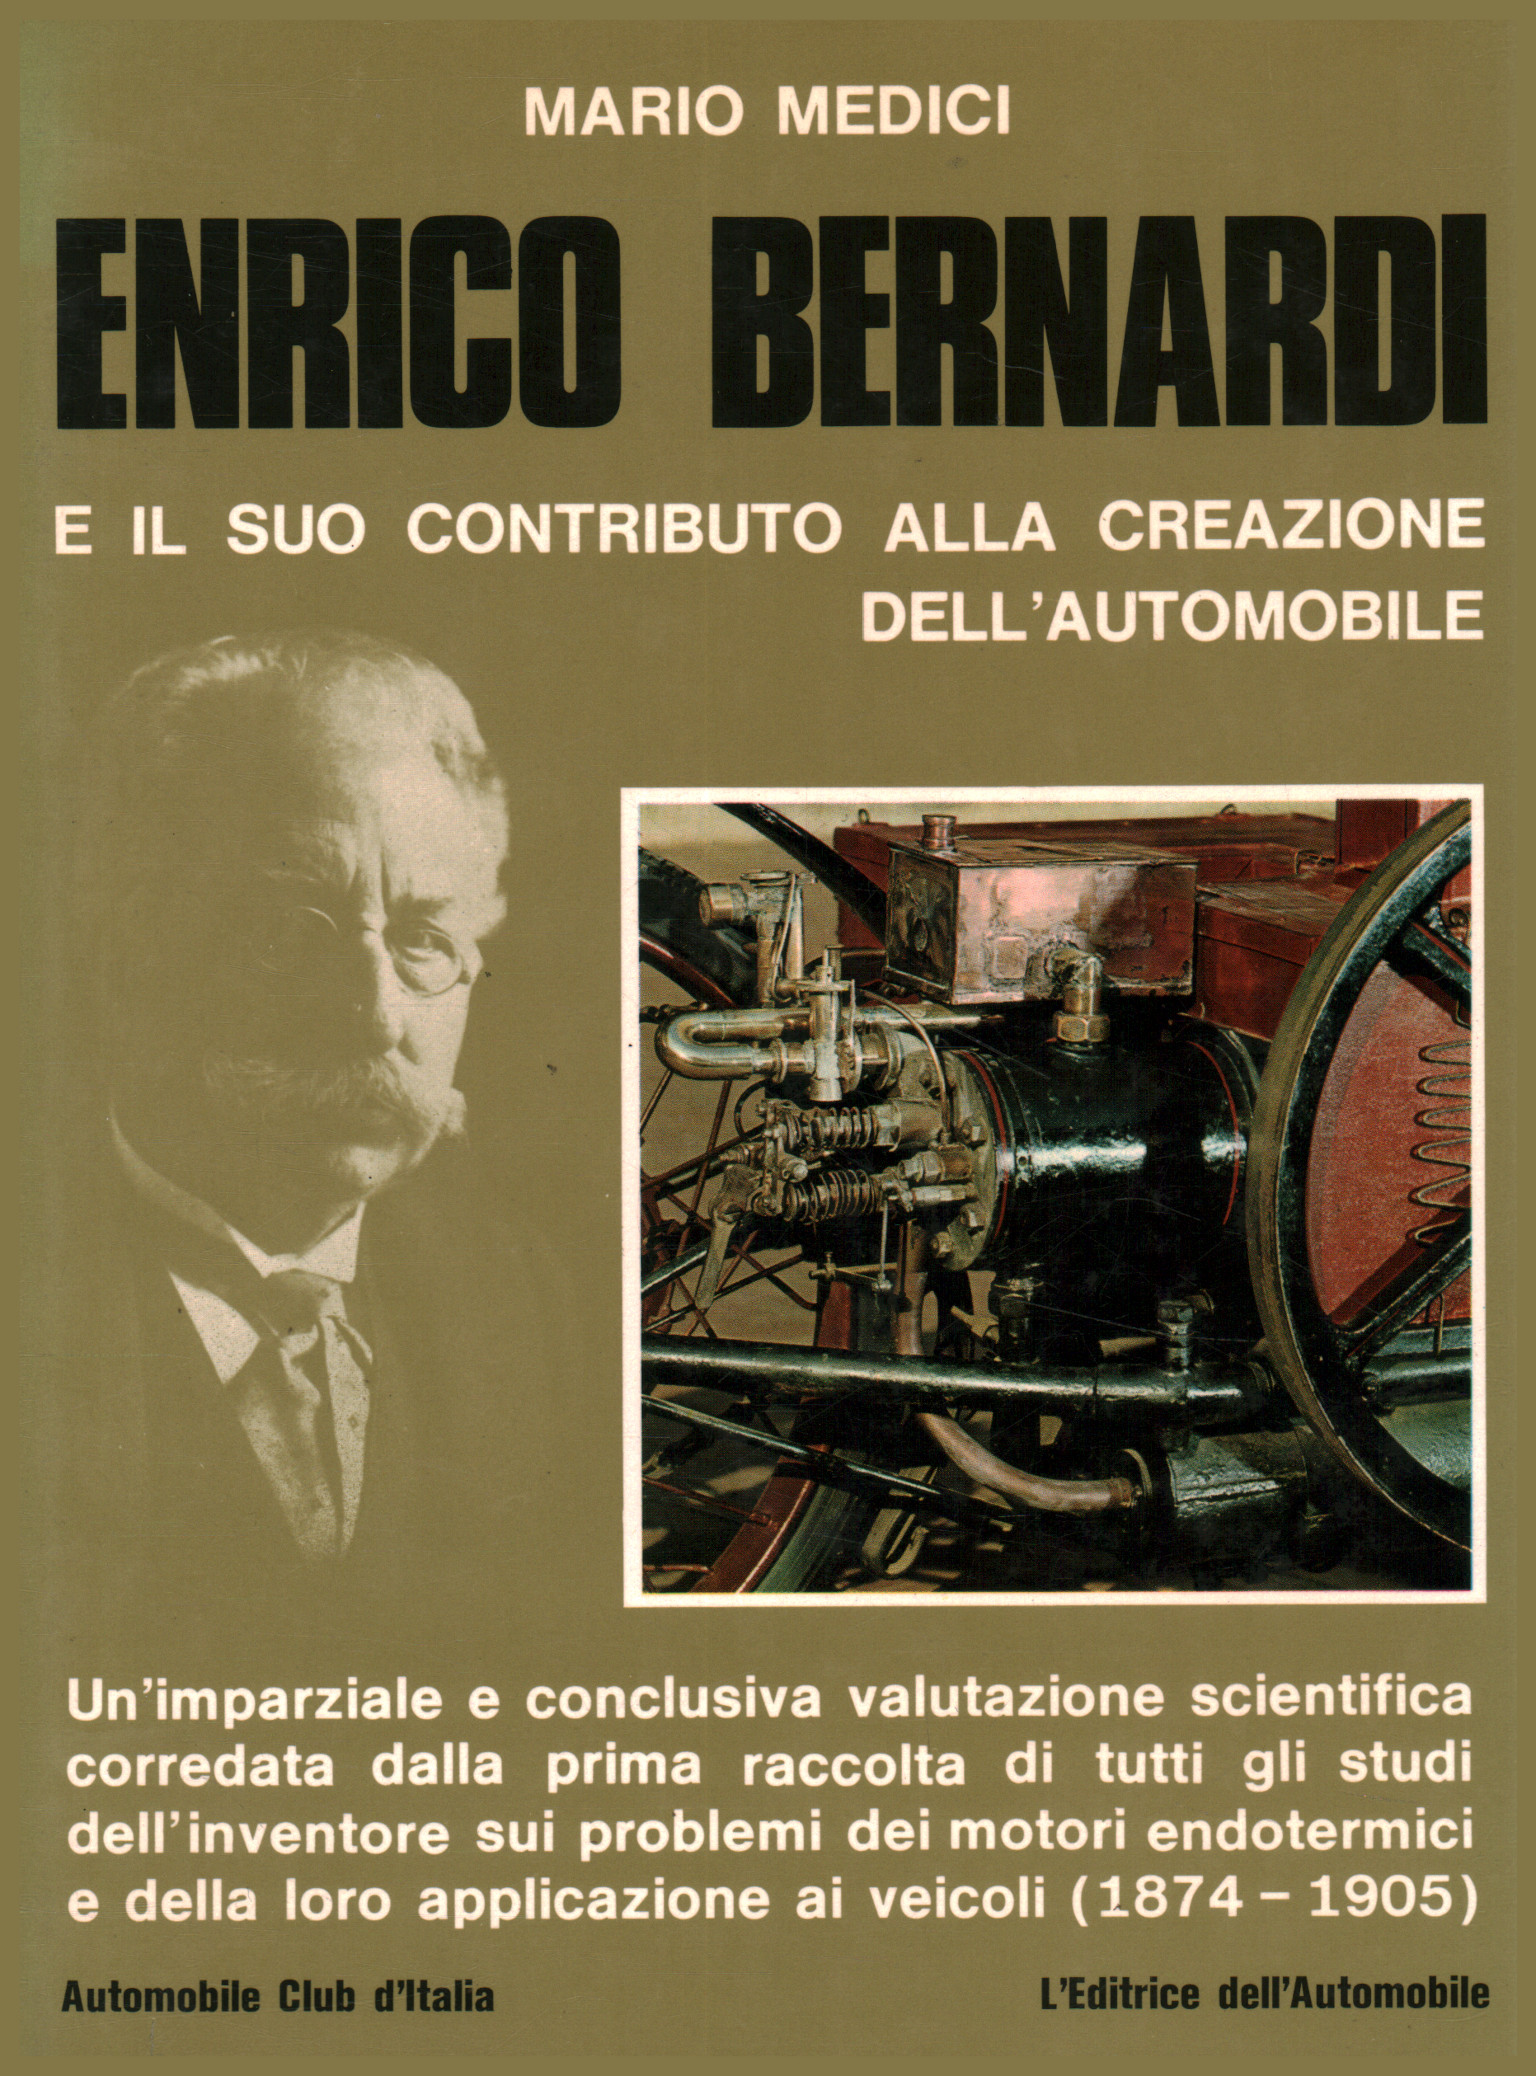 Enrico Bernardi et sa contribution à